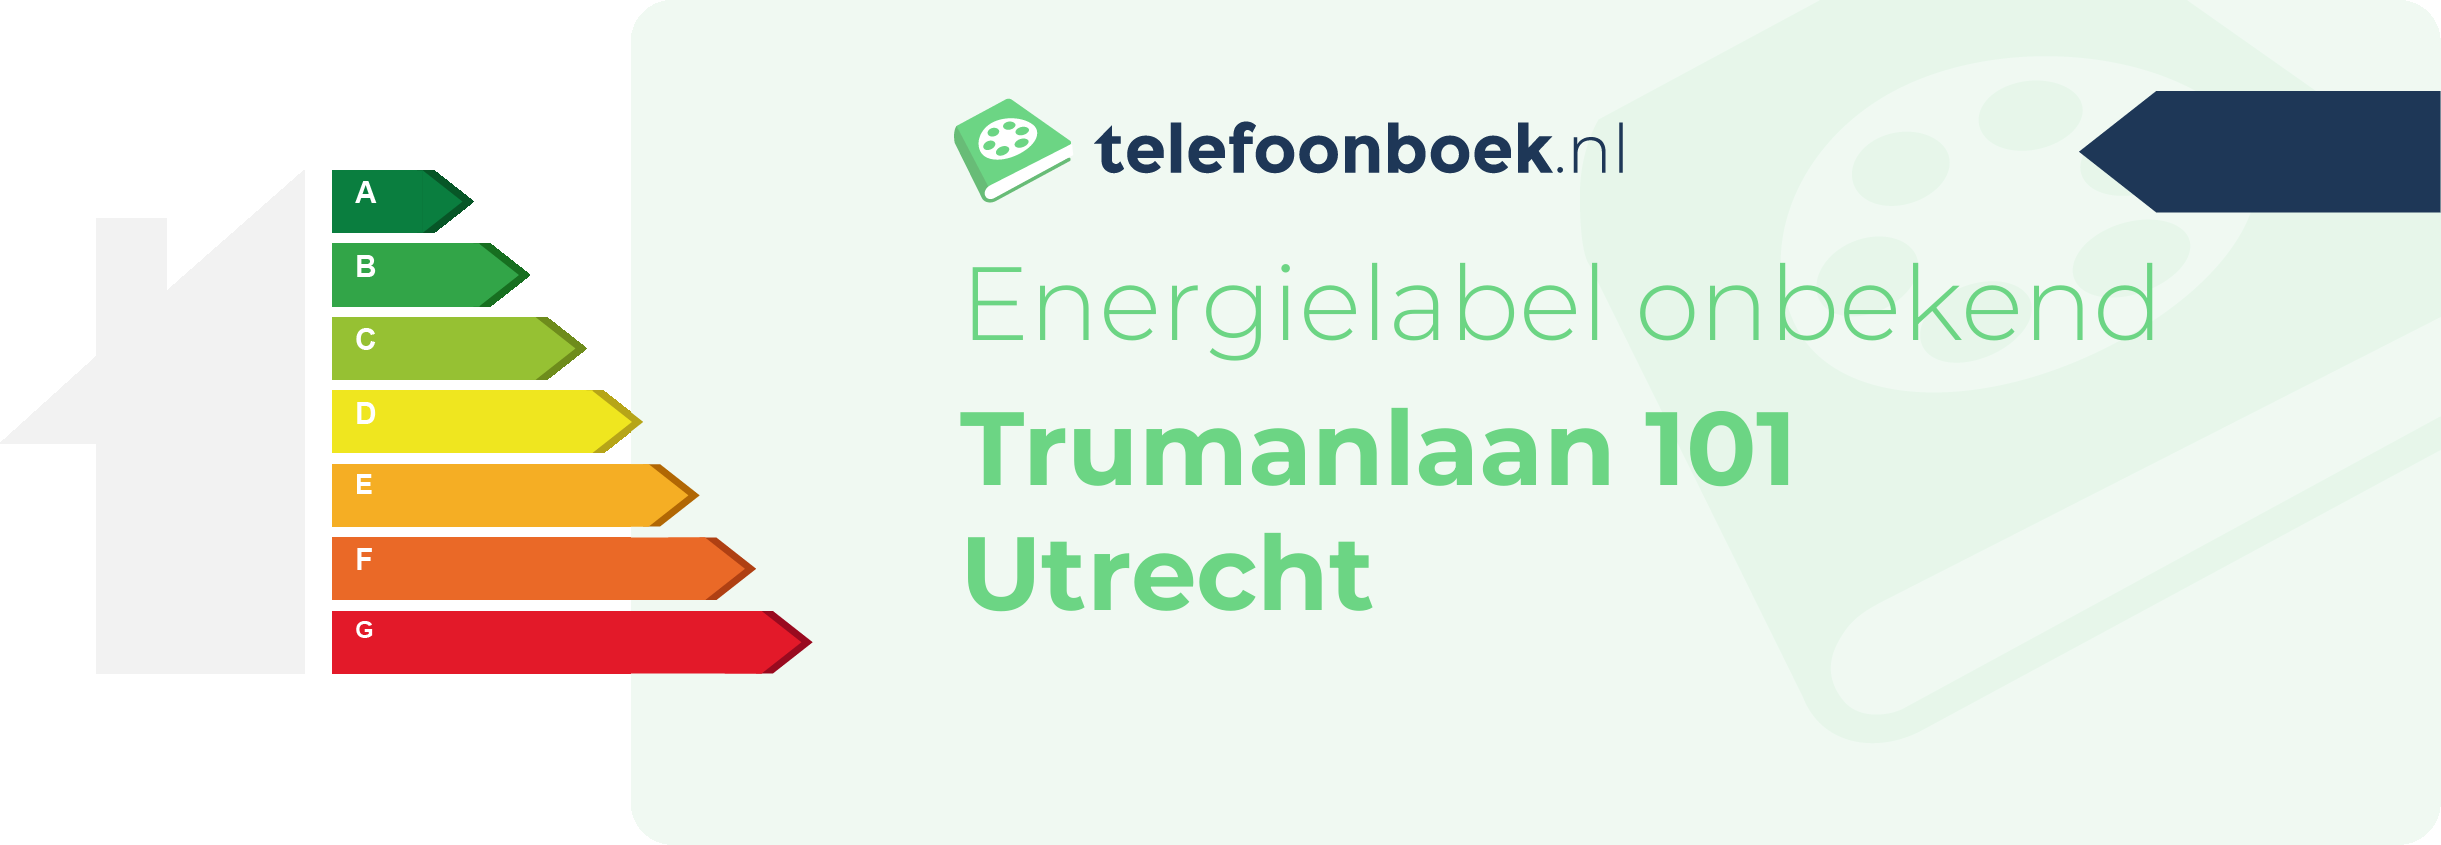 Energielabel Trumanlaan 101 Utrecht